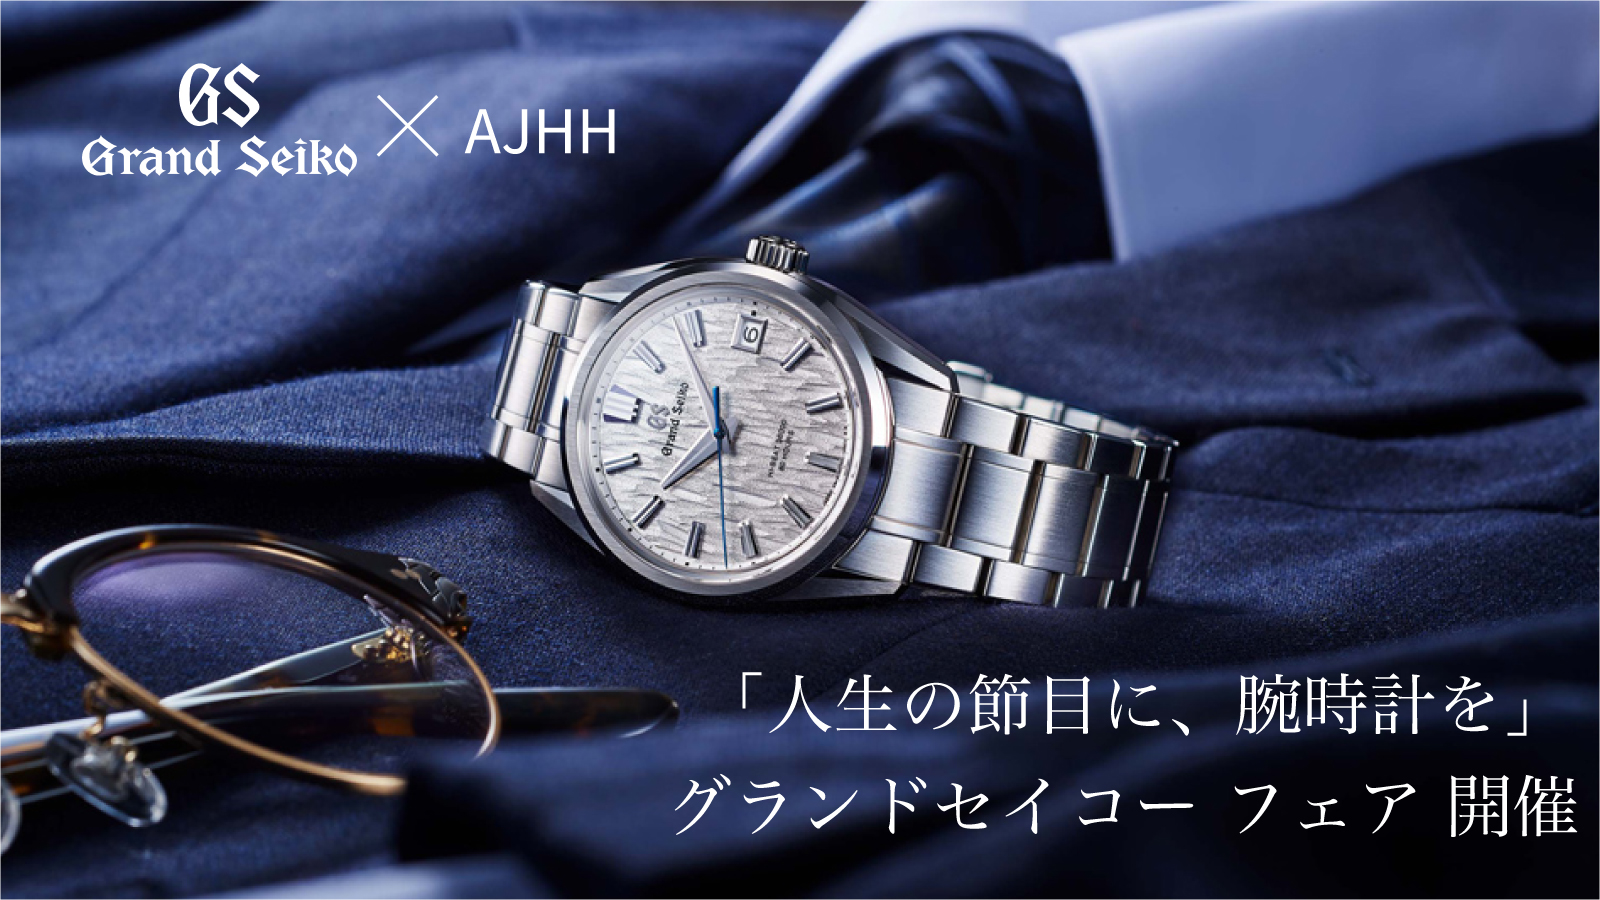 Grand Seiko × AJHH「人生の節目に、腕時計を」グランドセイコー フェア開催